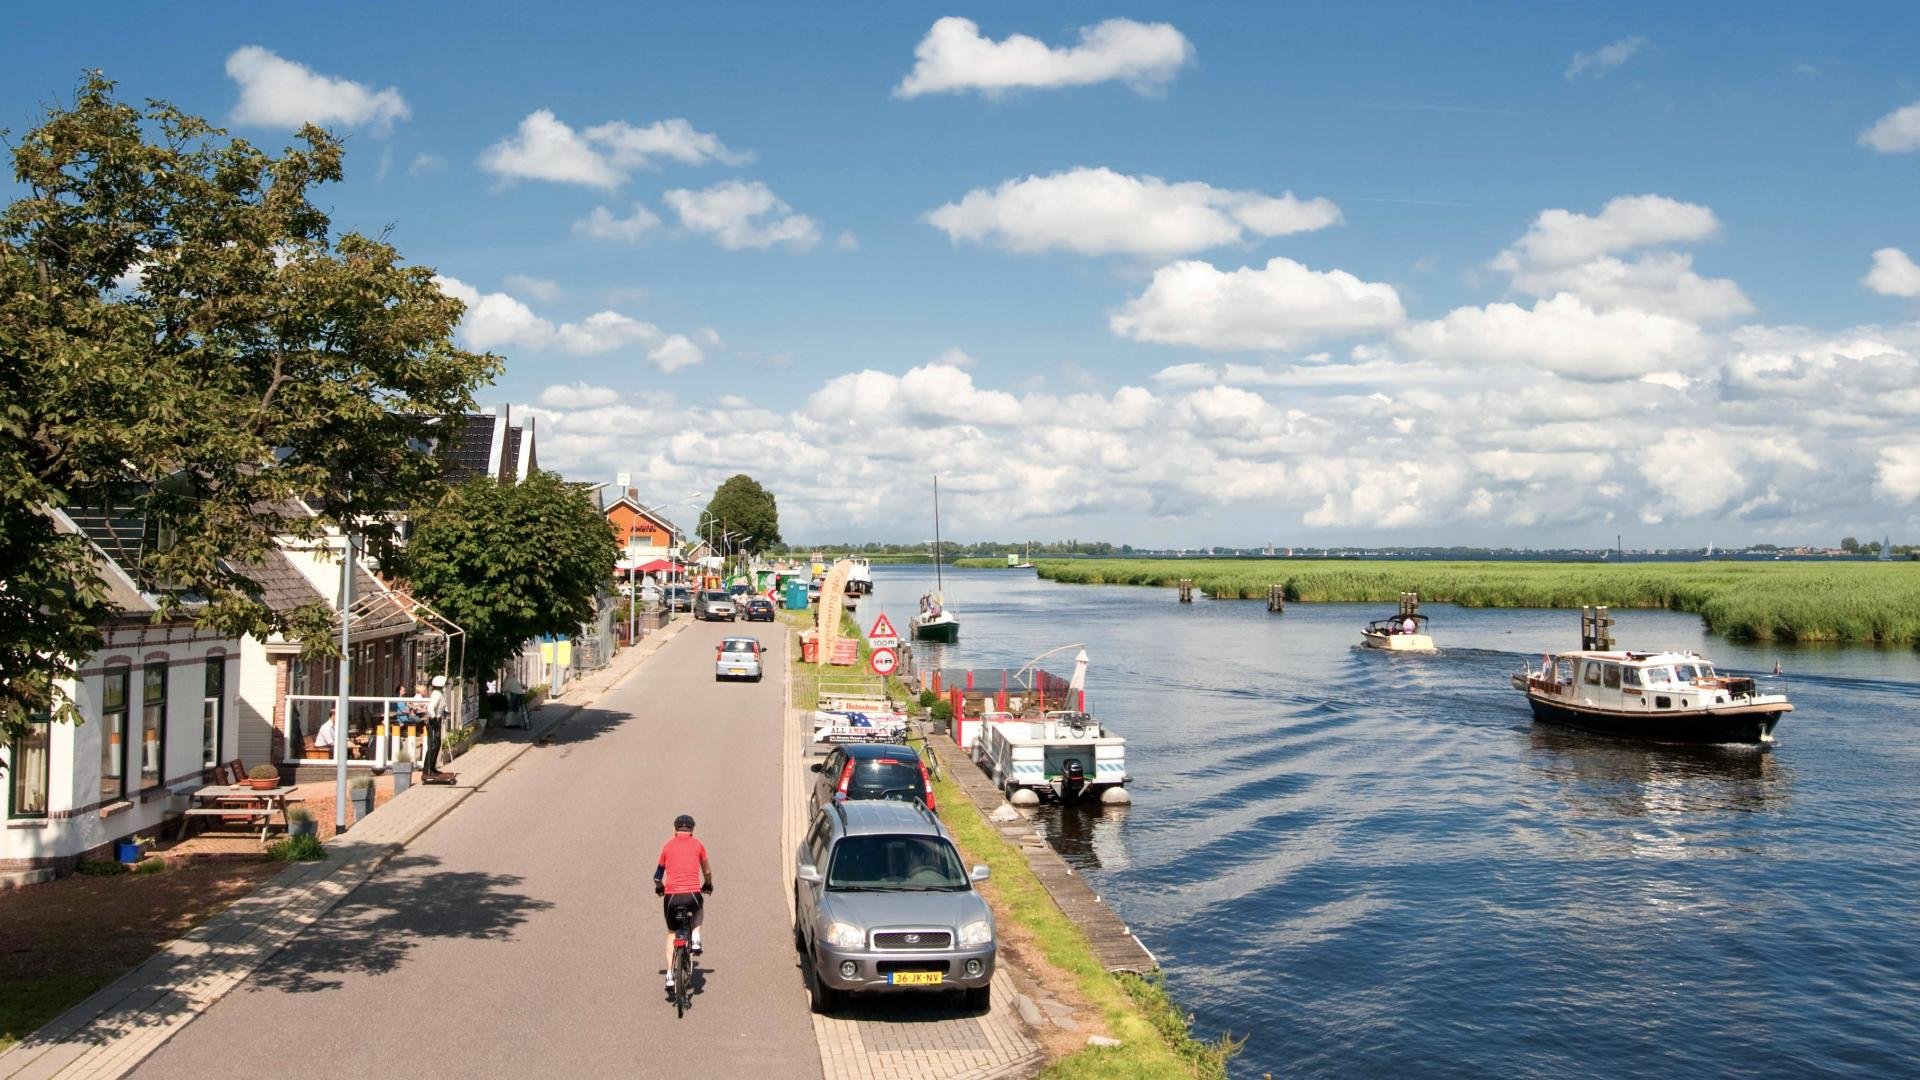 Afbeelding: headerfoto Ringdijk en Ringvaart op zonnige zomerdag met fietser, geparkeerde auto's en boot op het water.